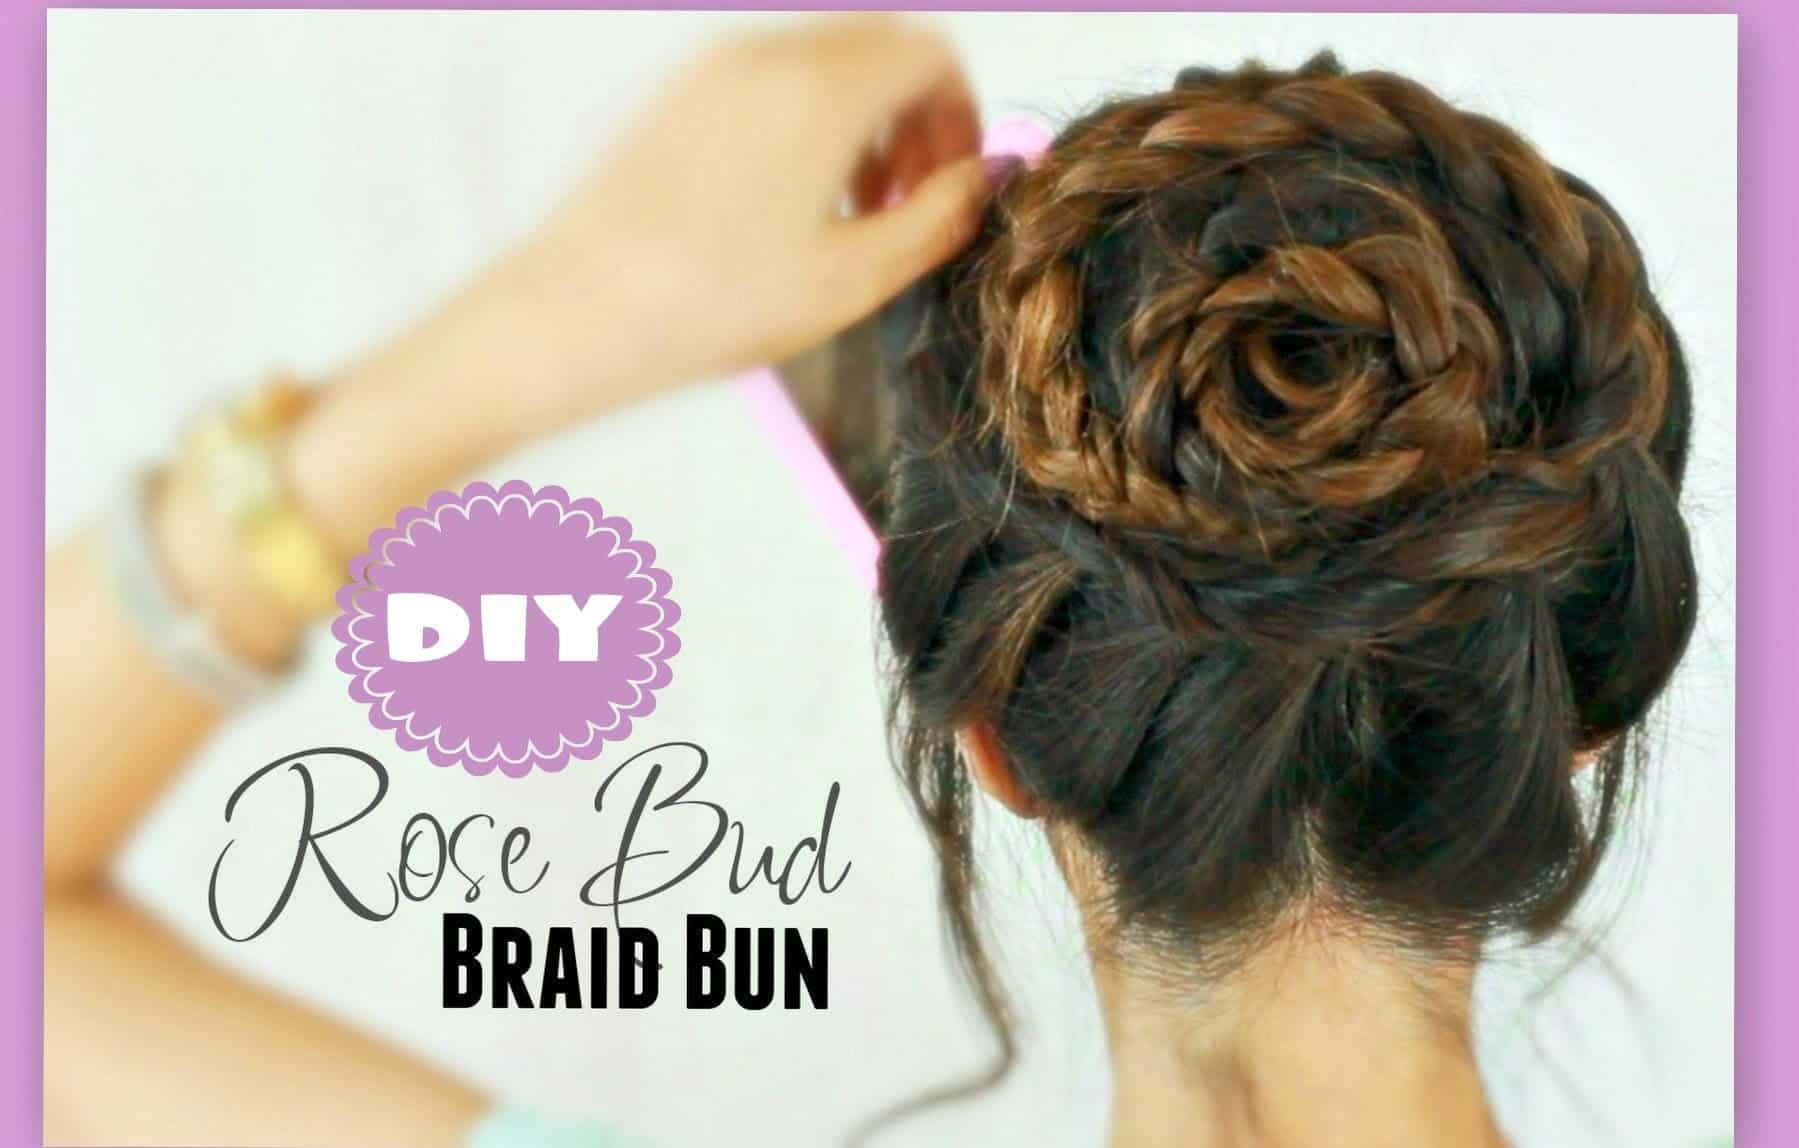 The rosebud braided bun